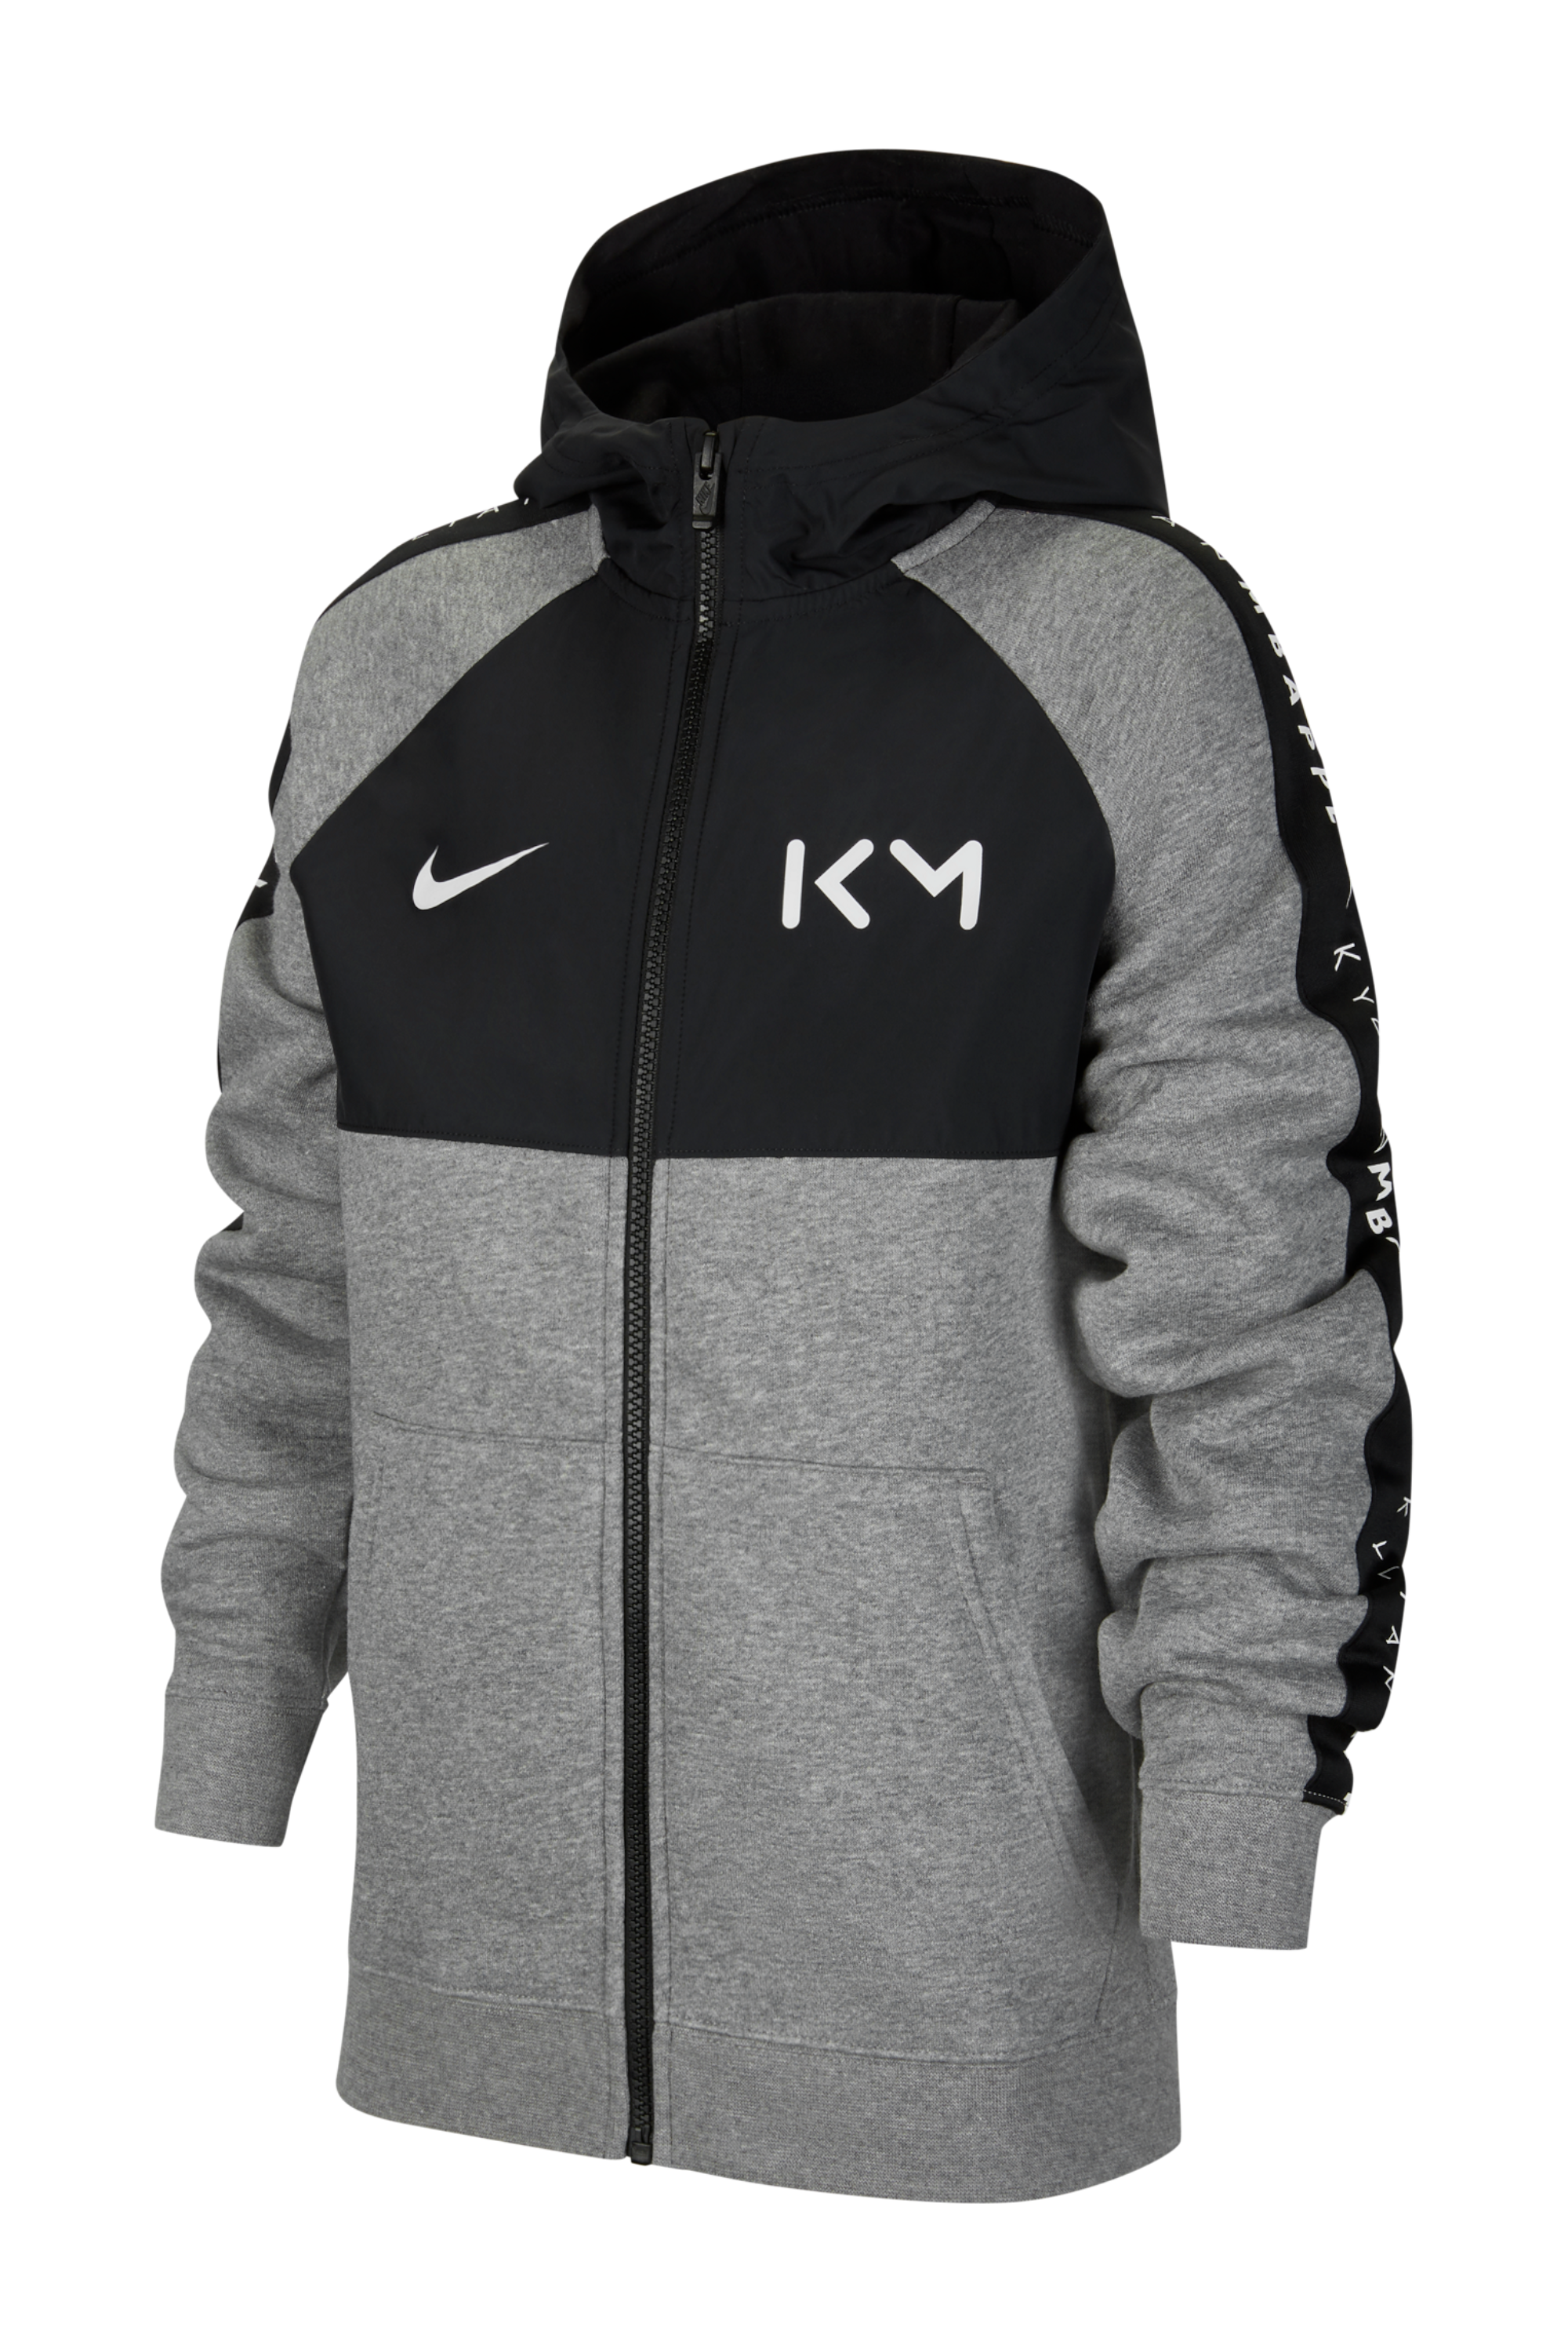 kylian mbappe hoodie